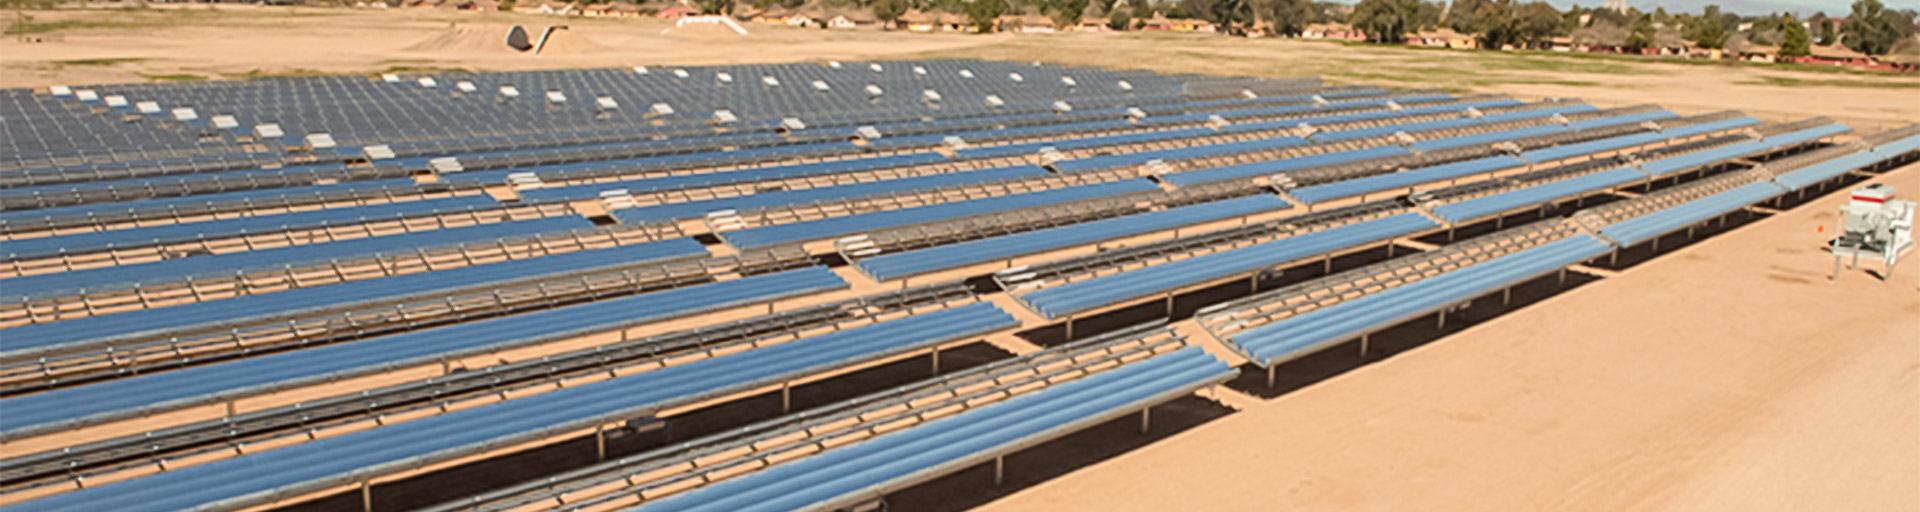 SunPower Solar Farm